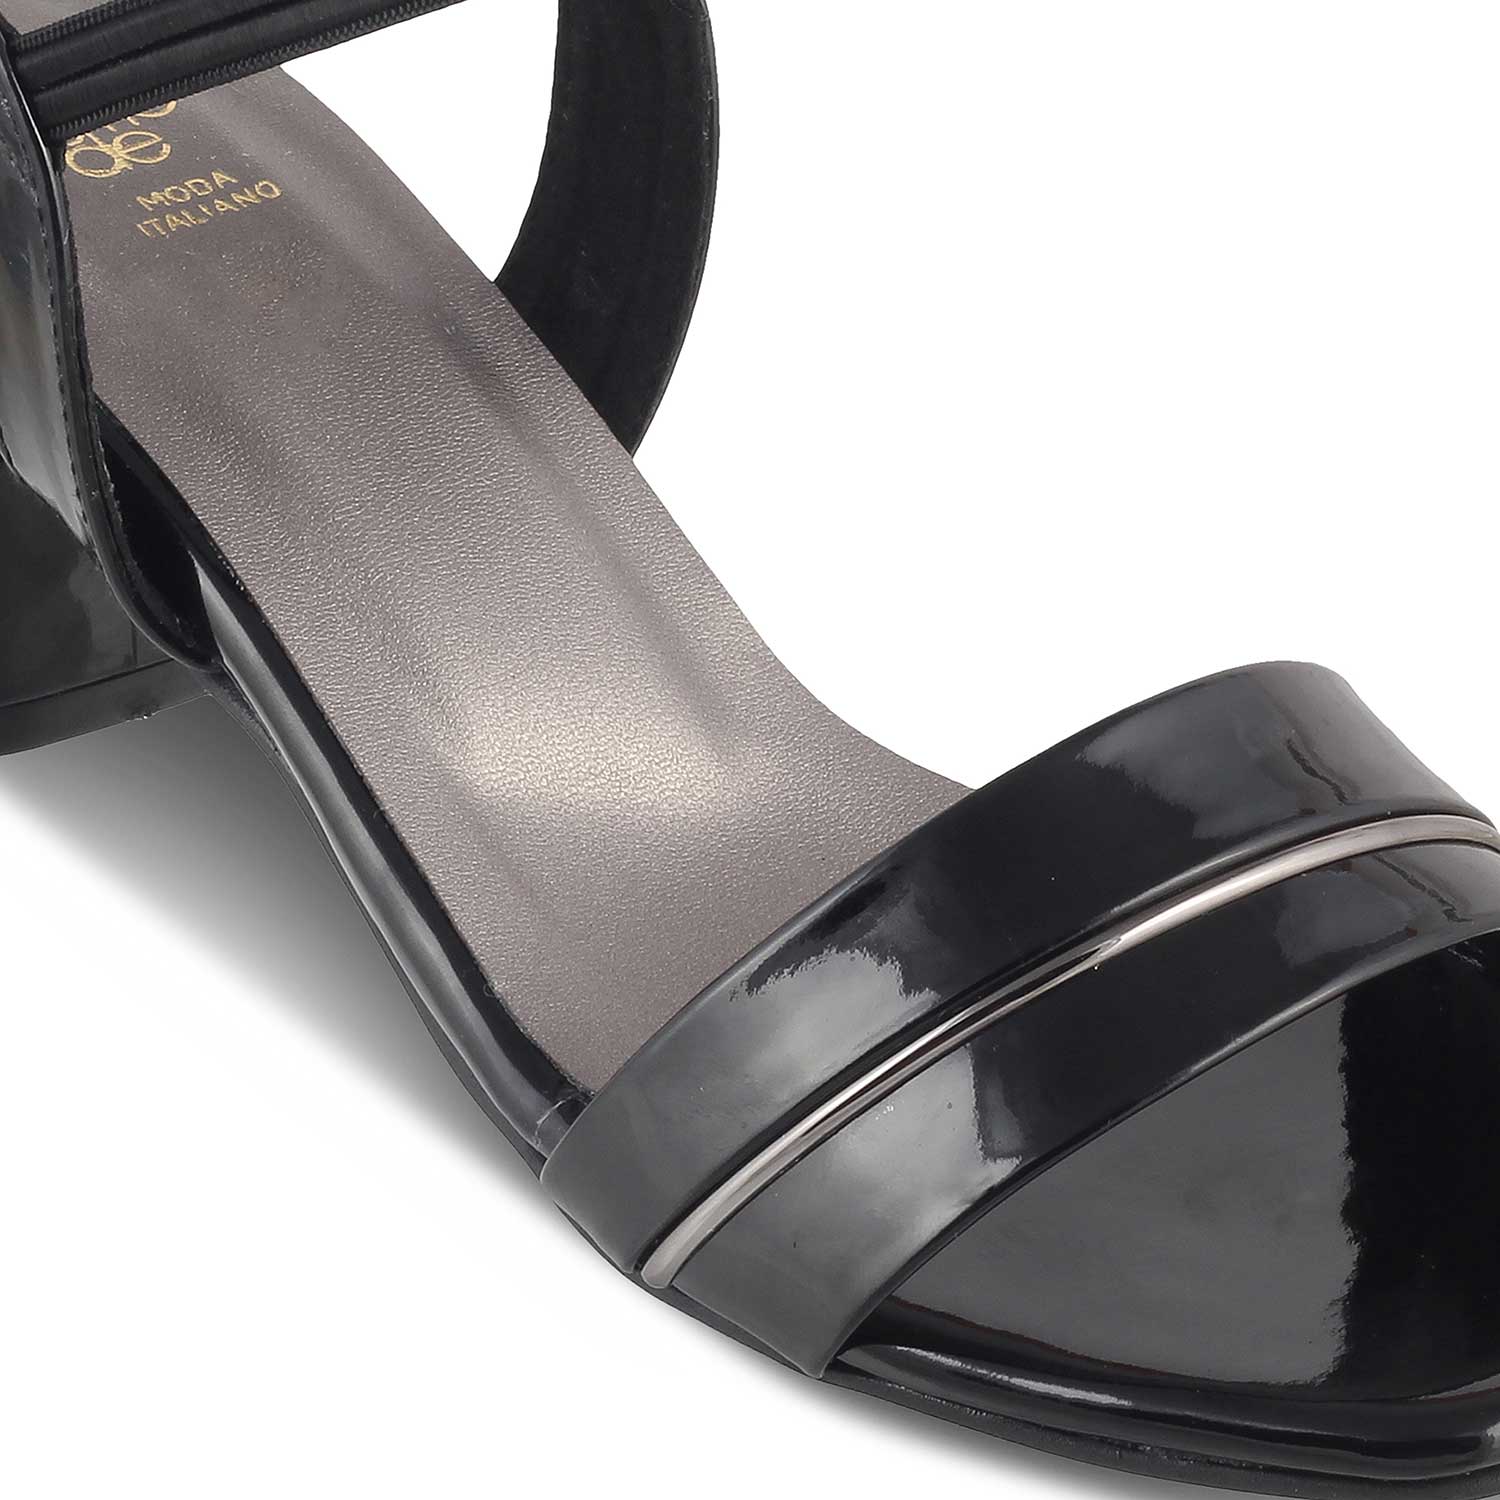 The Rachel Black Women's Dress Block Heel Sandals Tresmode